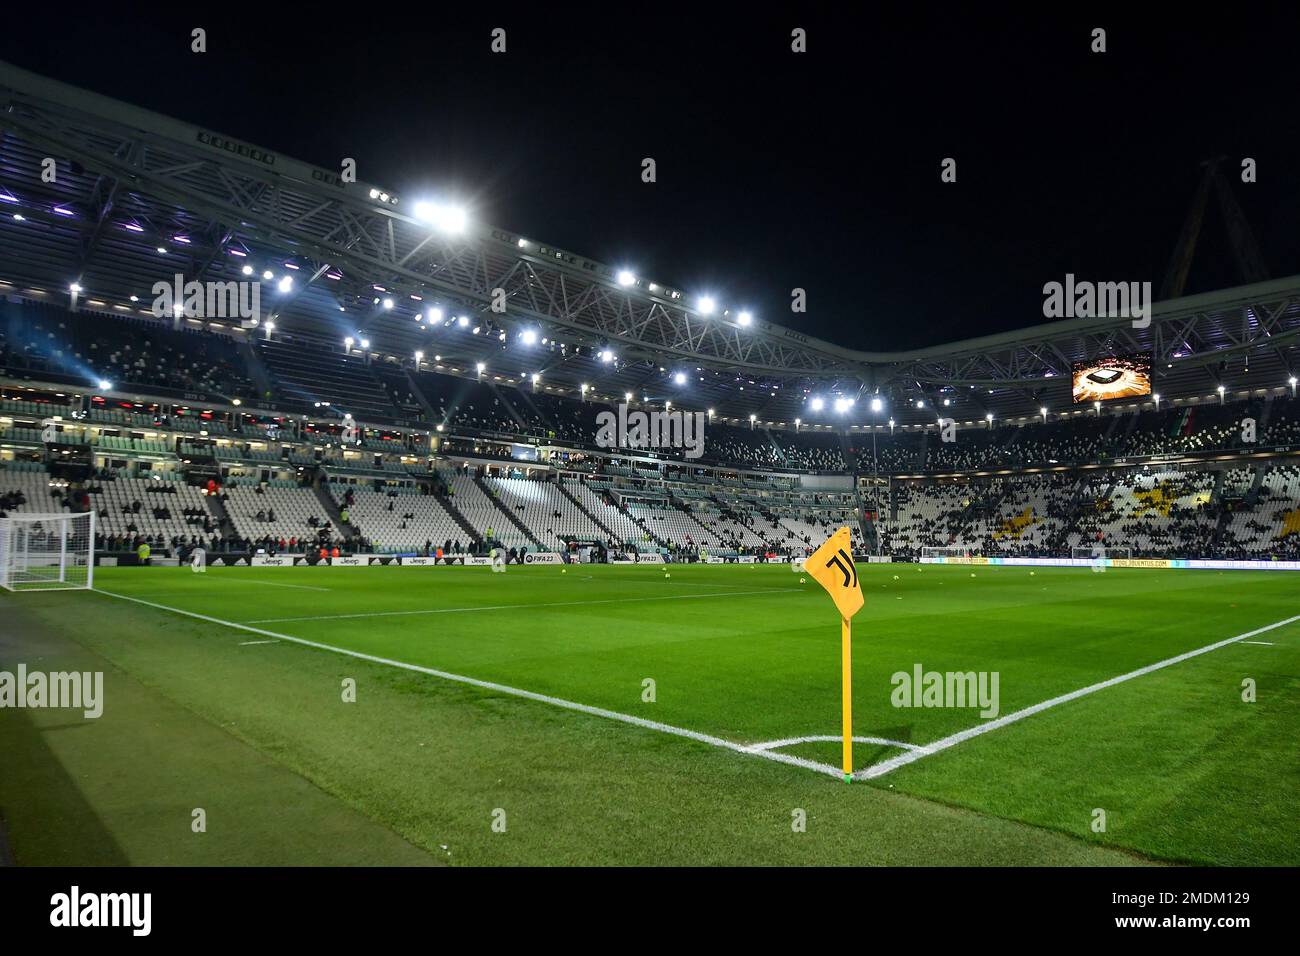 Vue panoramique du terrain pendant la série Un match de football entre le FC Juventus et Atalanta BC au stade Juventus de Turin (Italie), 22 janvier, Banque D'Images